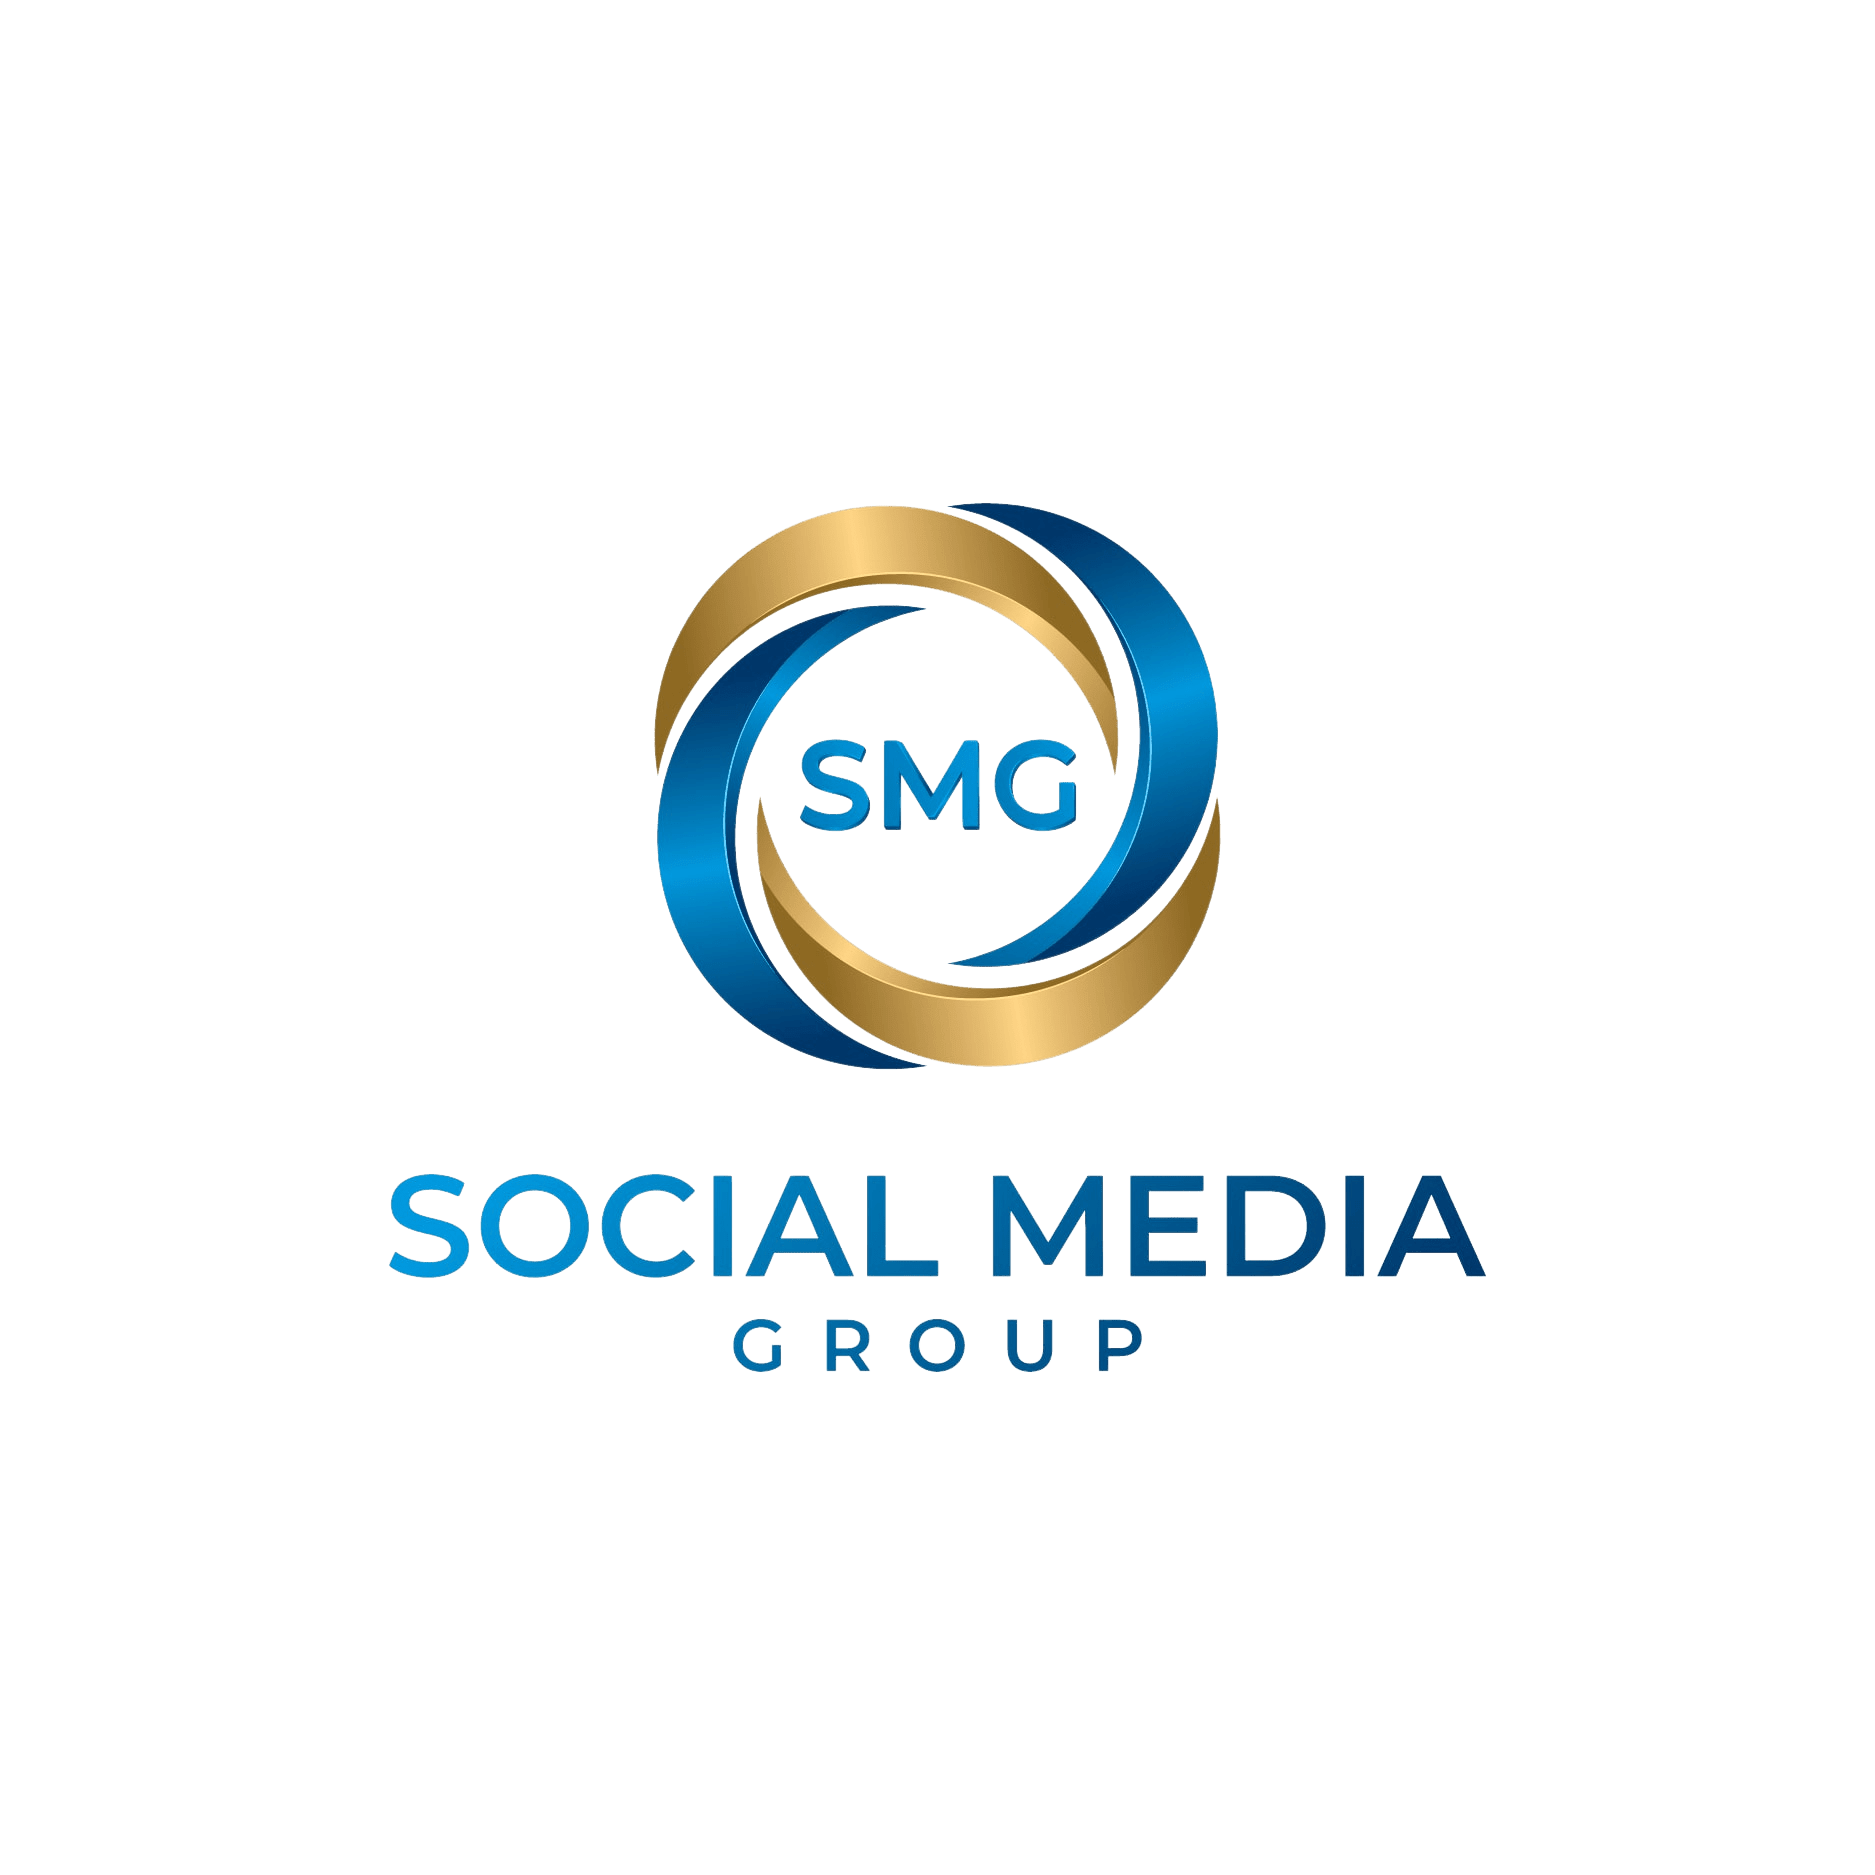 Social Media Group LLC